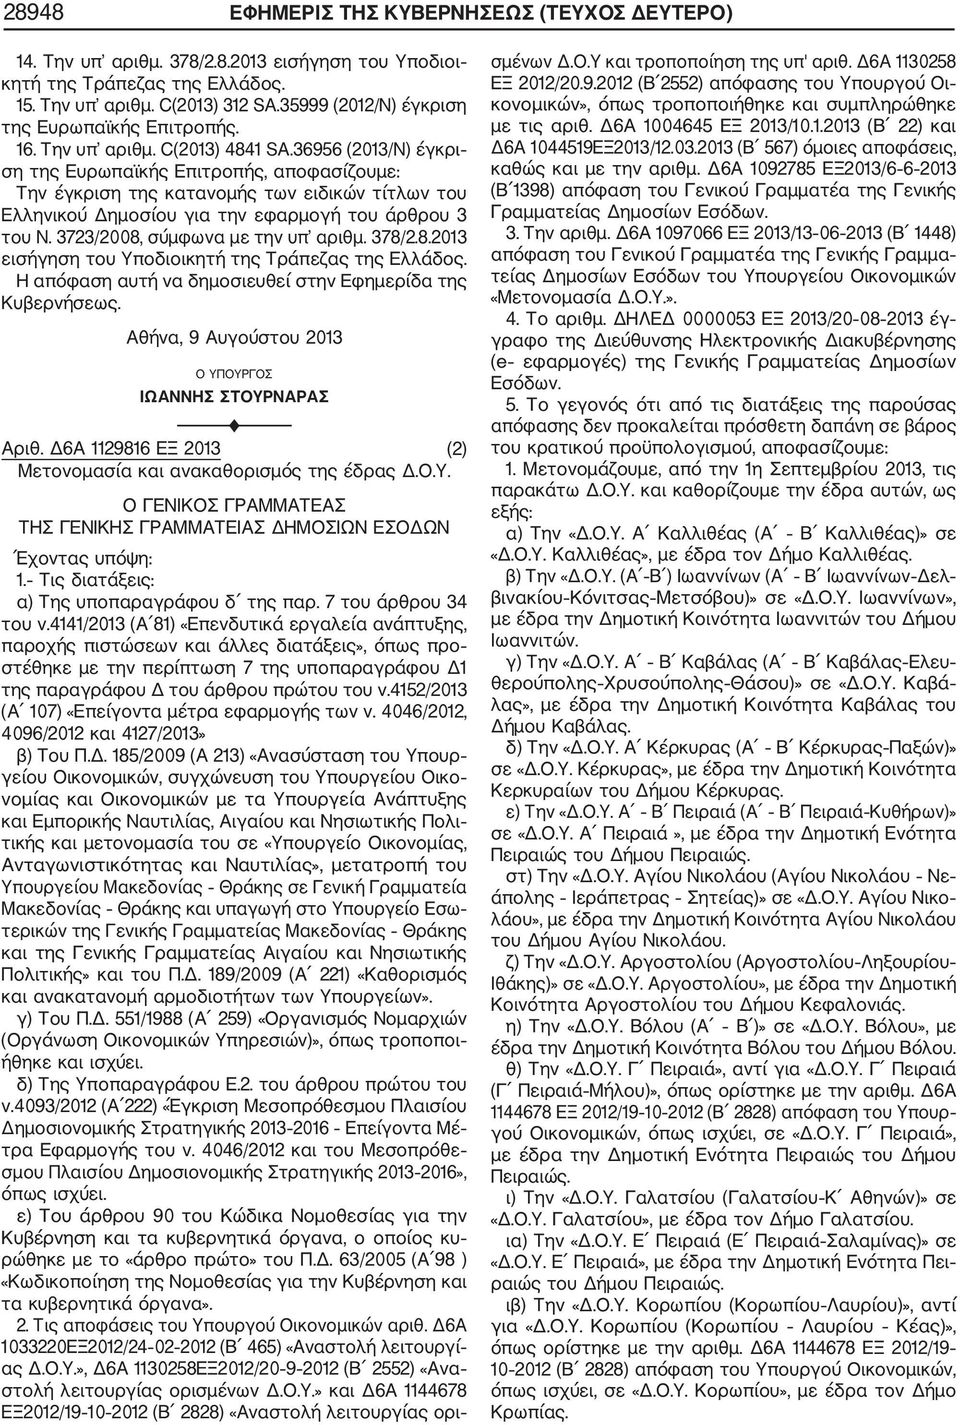 36956 (2013/Ν) έγκρι ση της Ευρωπαϊκής Επιτροπής, αποφασίζουμε: Την έγκριση της κατανομής των ειδικών τίτλων του Ελληνικού Δημοσίου για την εφαρμογή του άρθρου 3 του Ν.